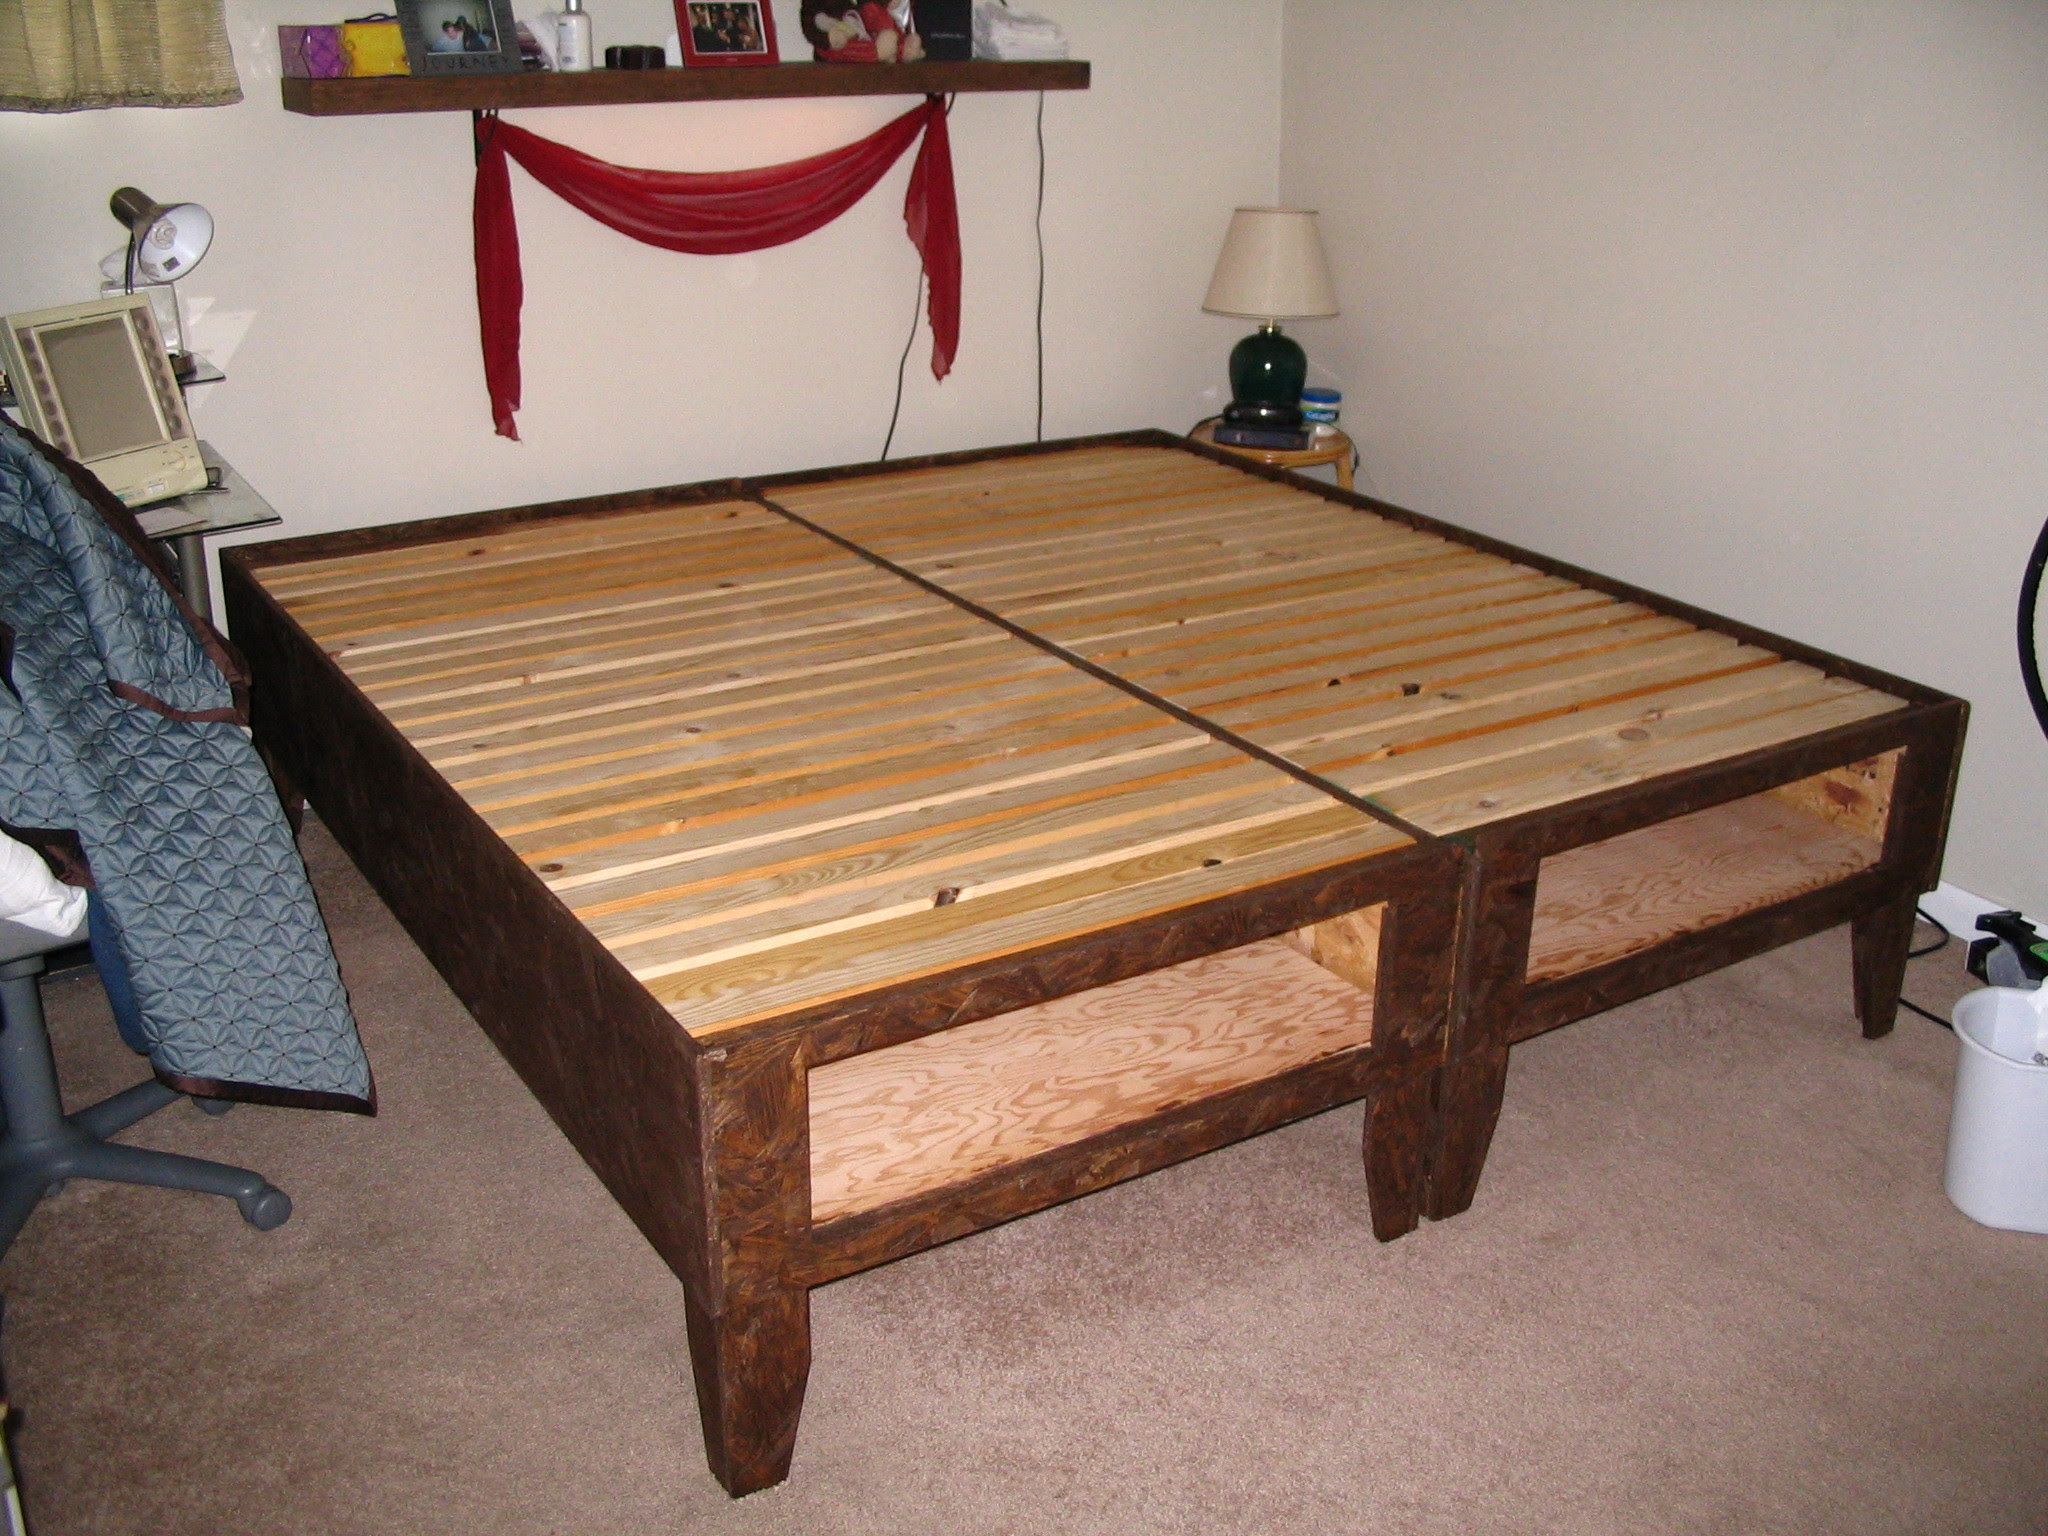 Самодельная кровать из дерева. Самодельная двуспальная кровать. Кровать из брусков. Самодельная деревянная кровать. Кровать двуспальная деревянная своими руками.